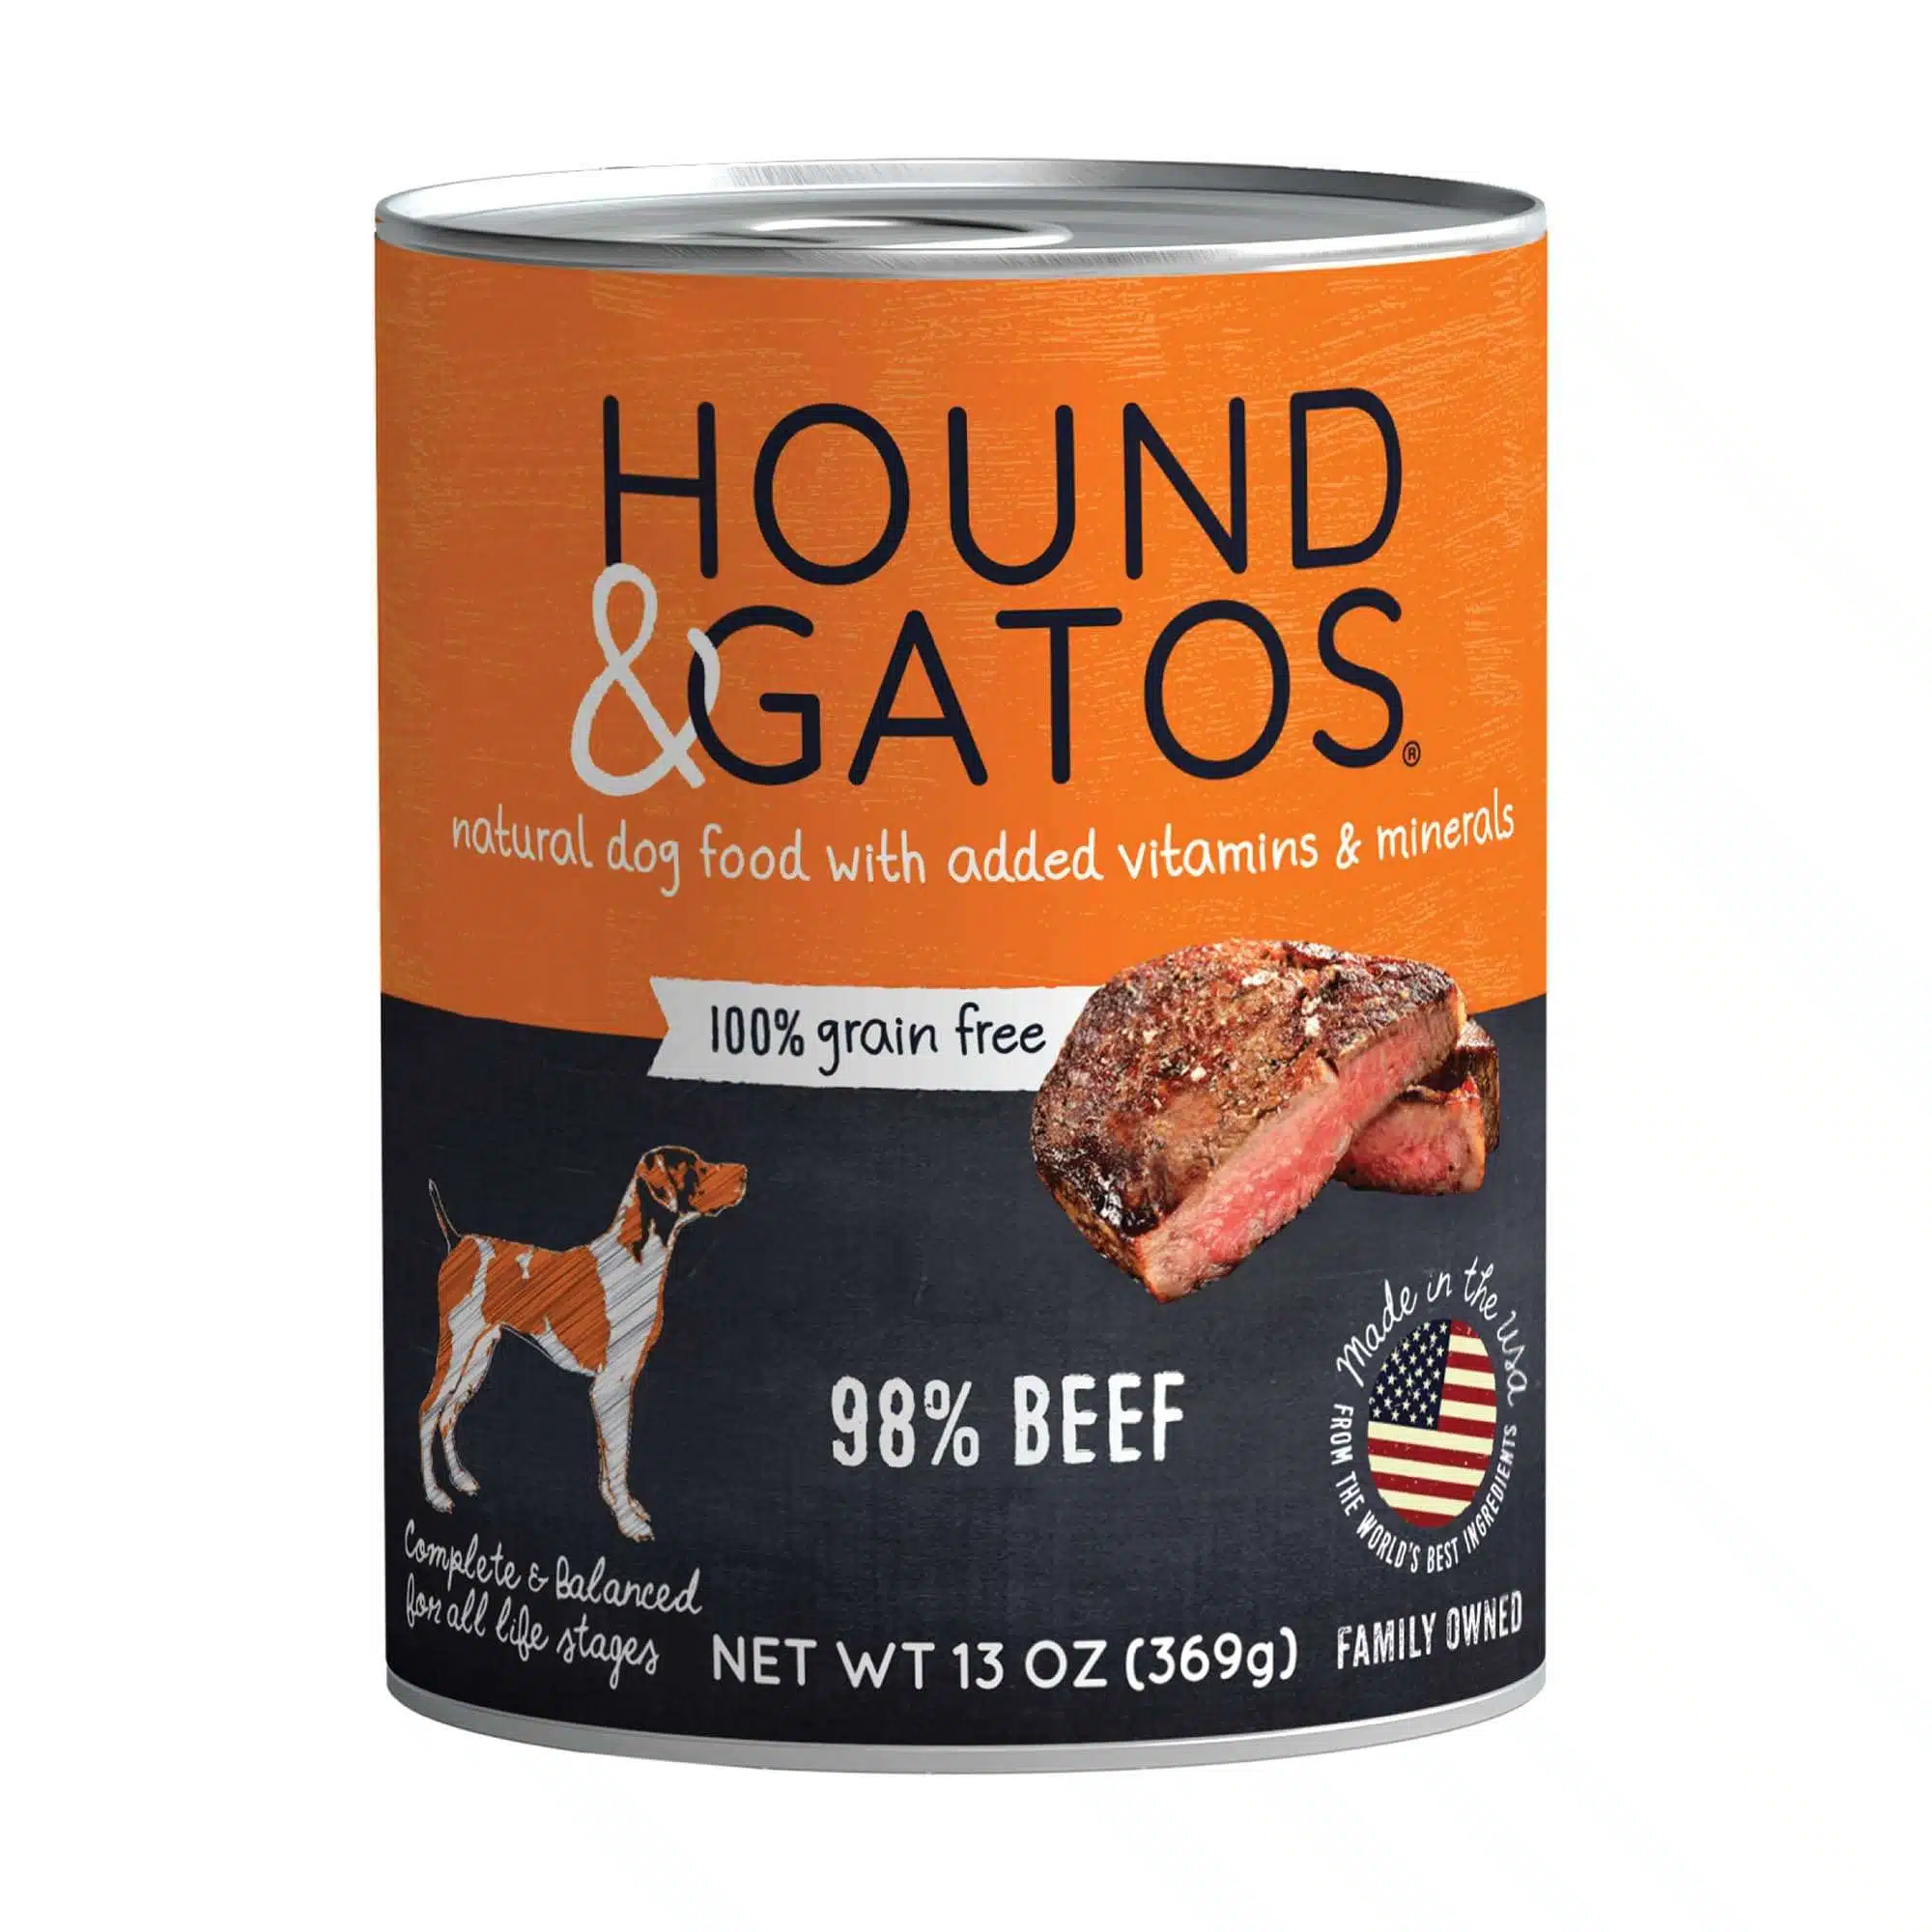 Hound & Gatos Grain Free, Beef Wet Dog Food, 13 oz., Case of 12, 12 X 13 OZ